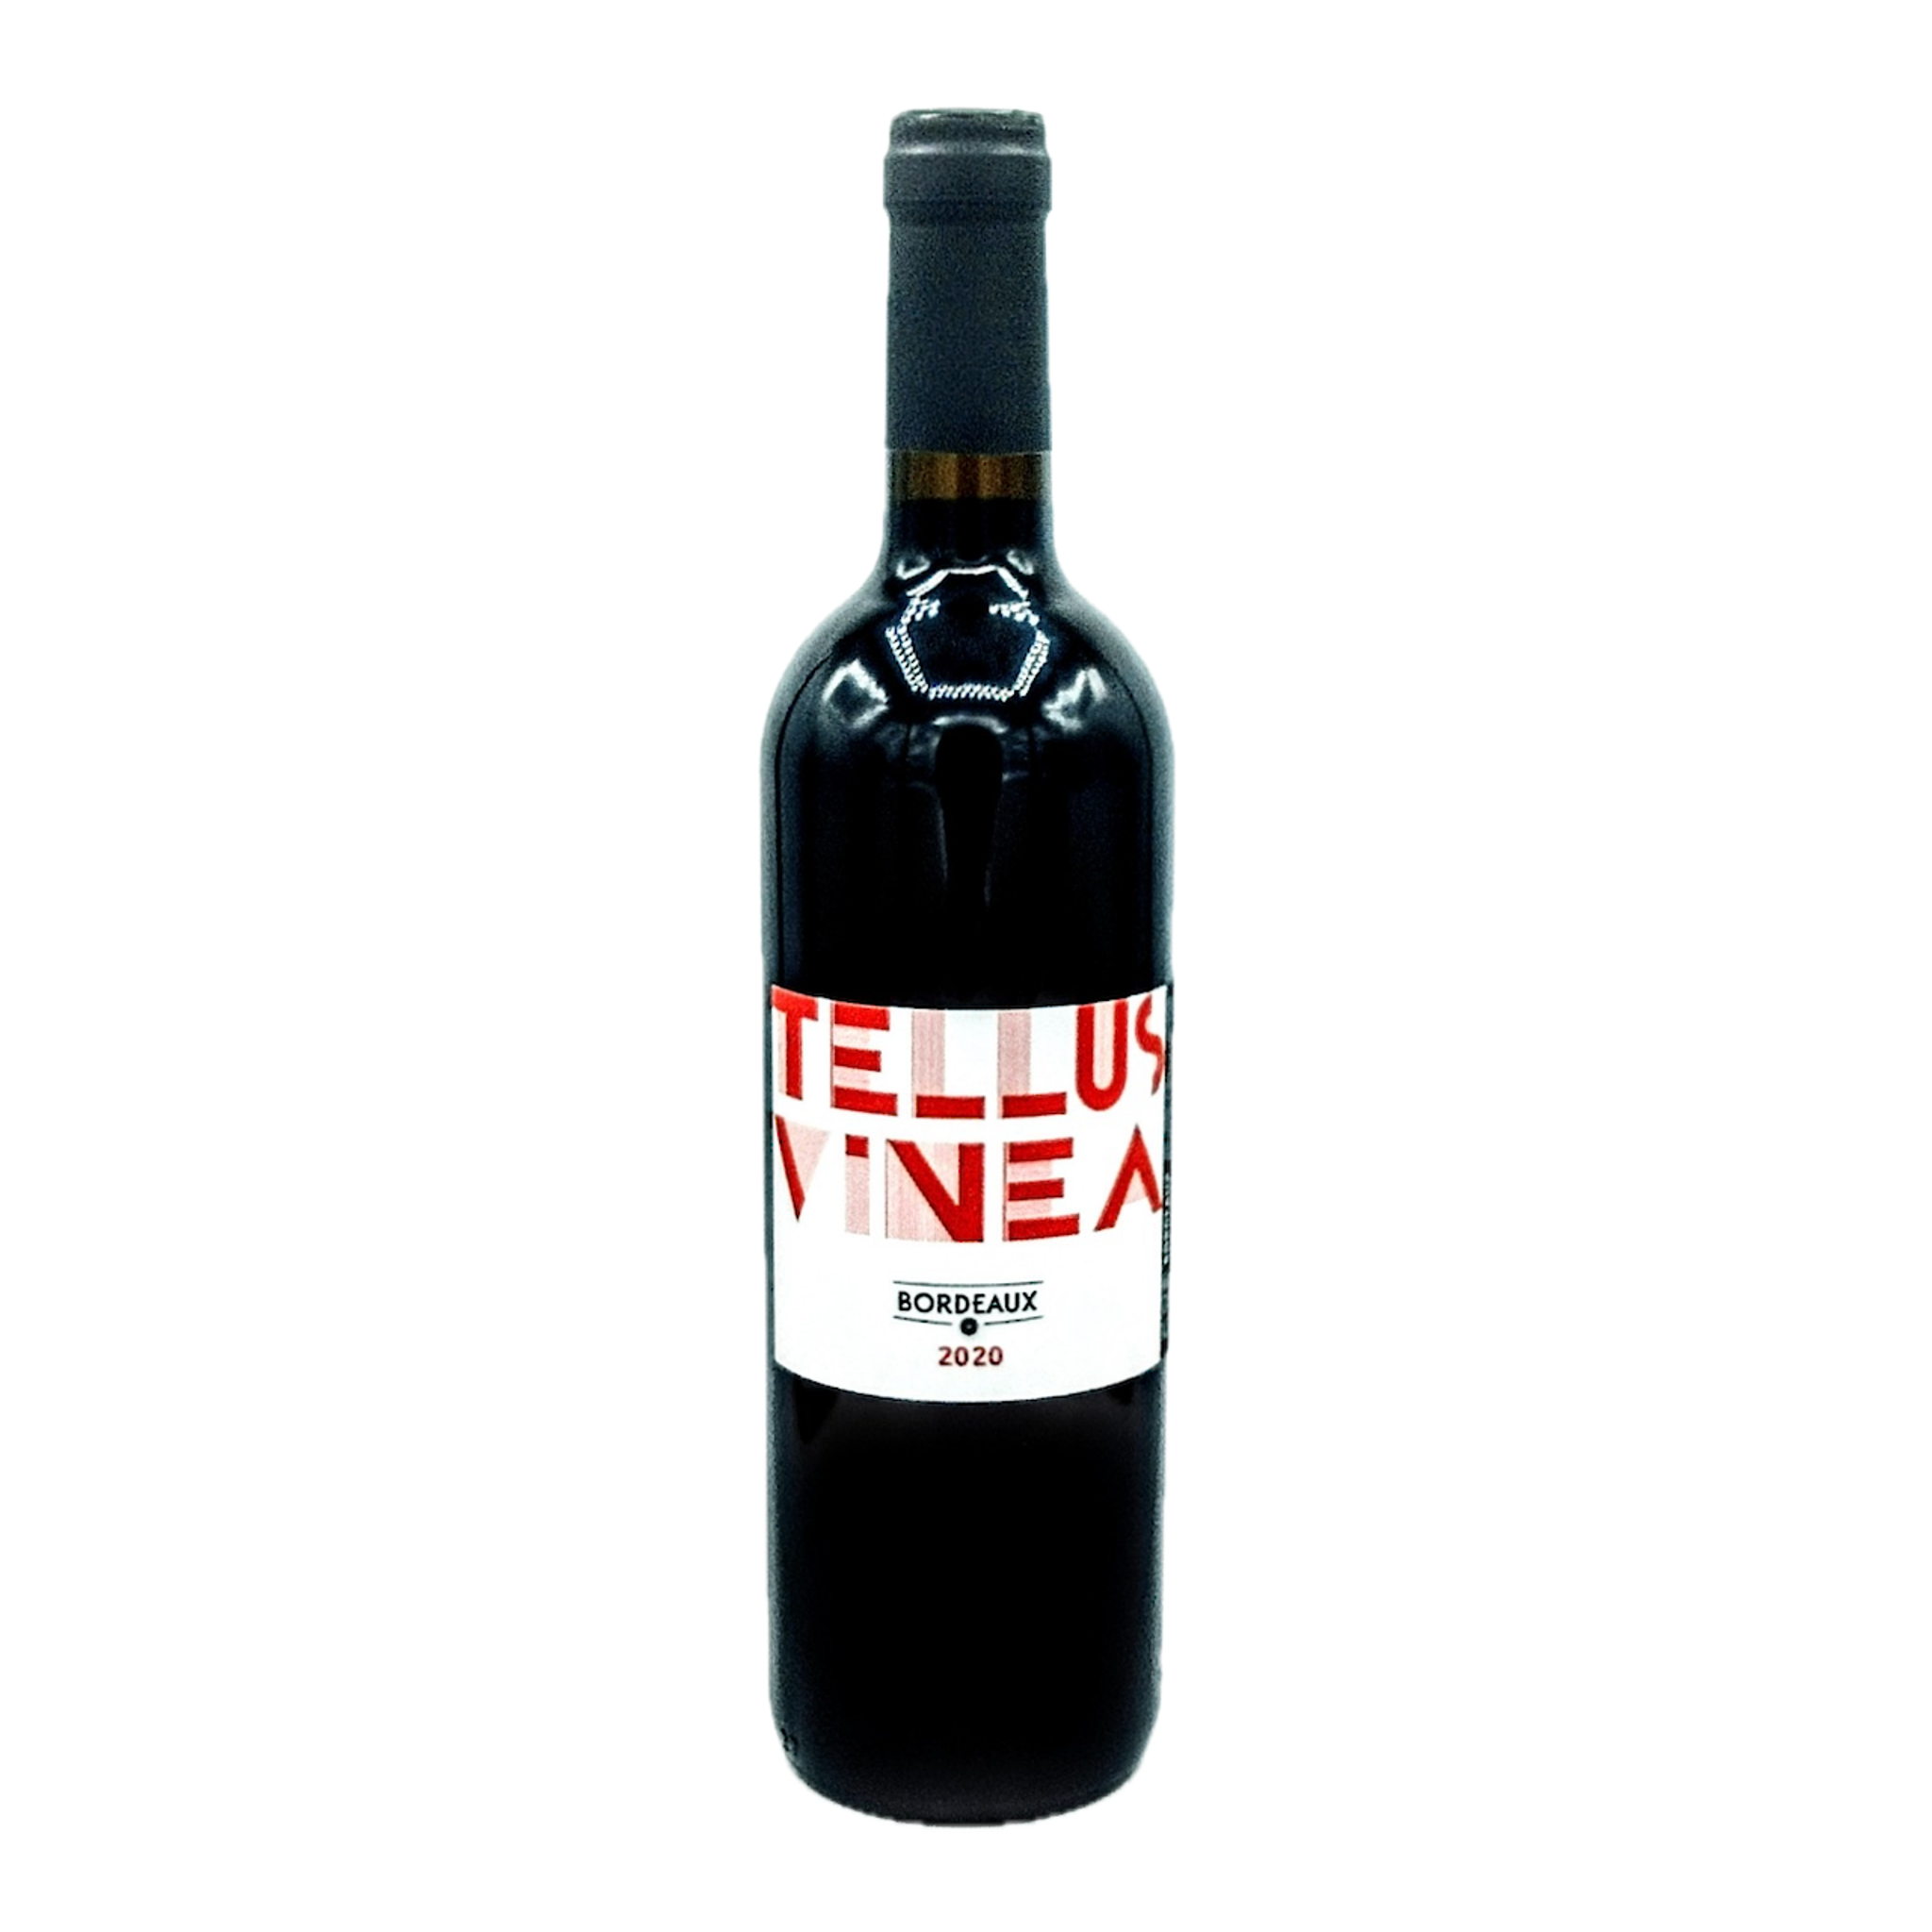 Bordeaux Rouge 2020 Tellus Vinea 750ml